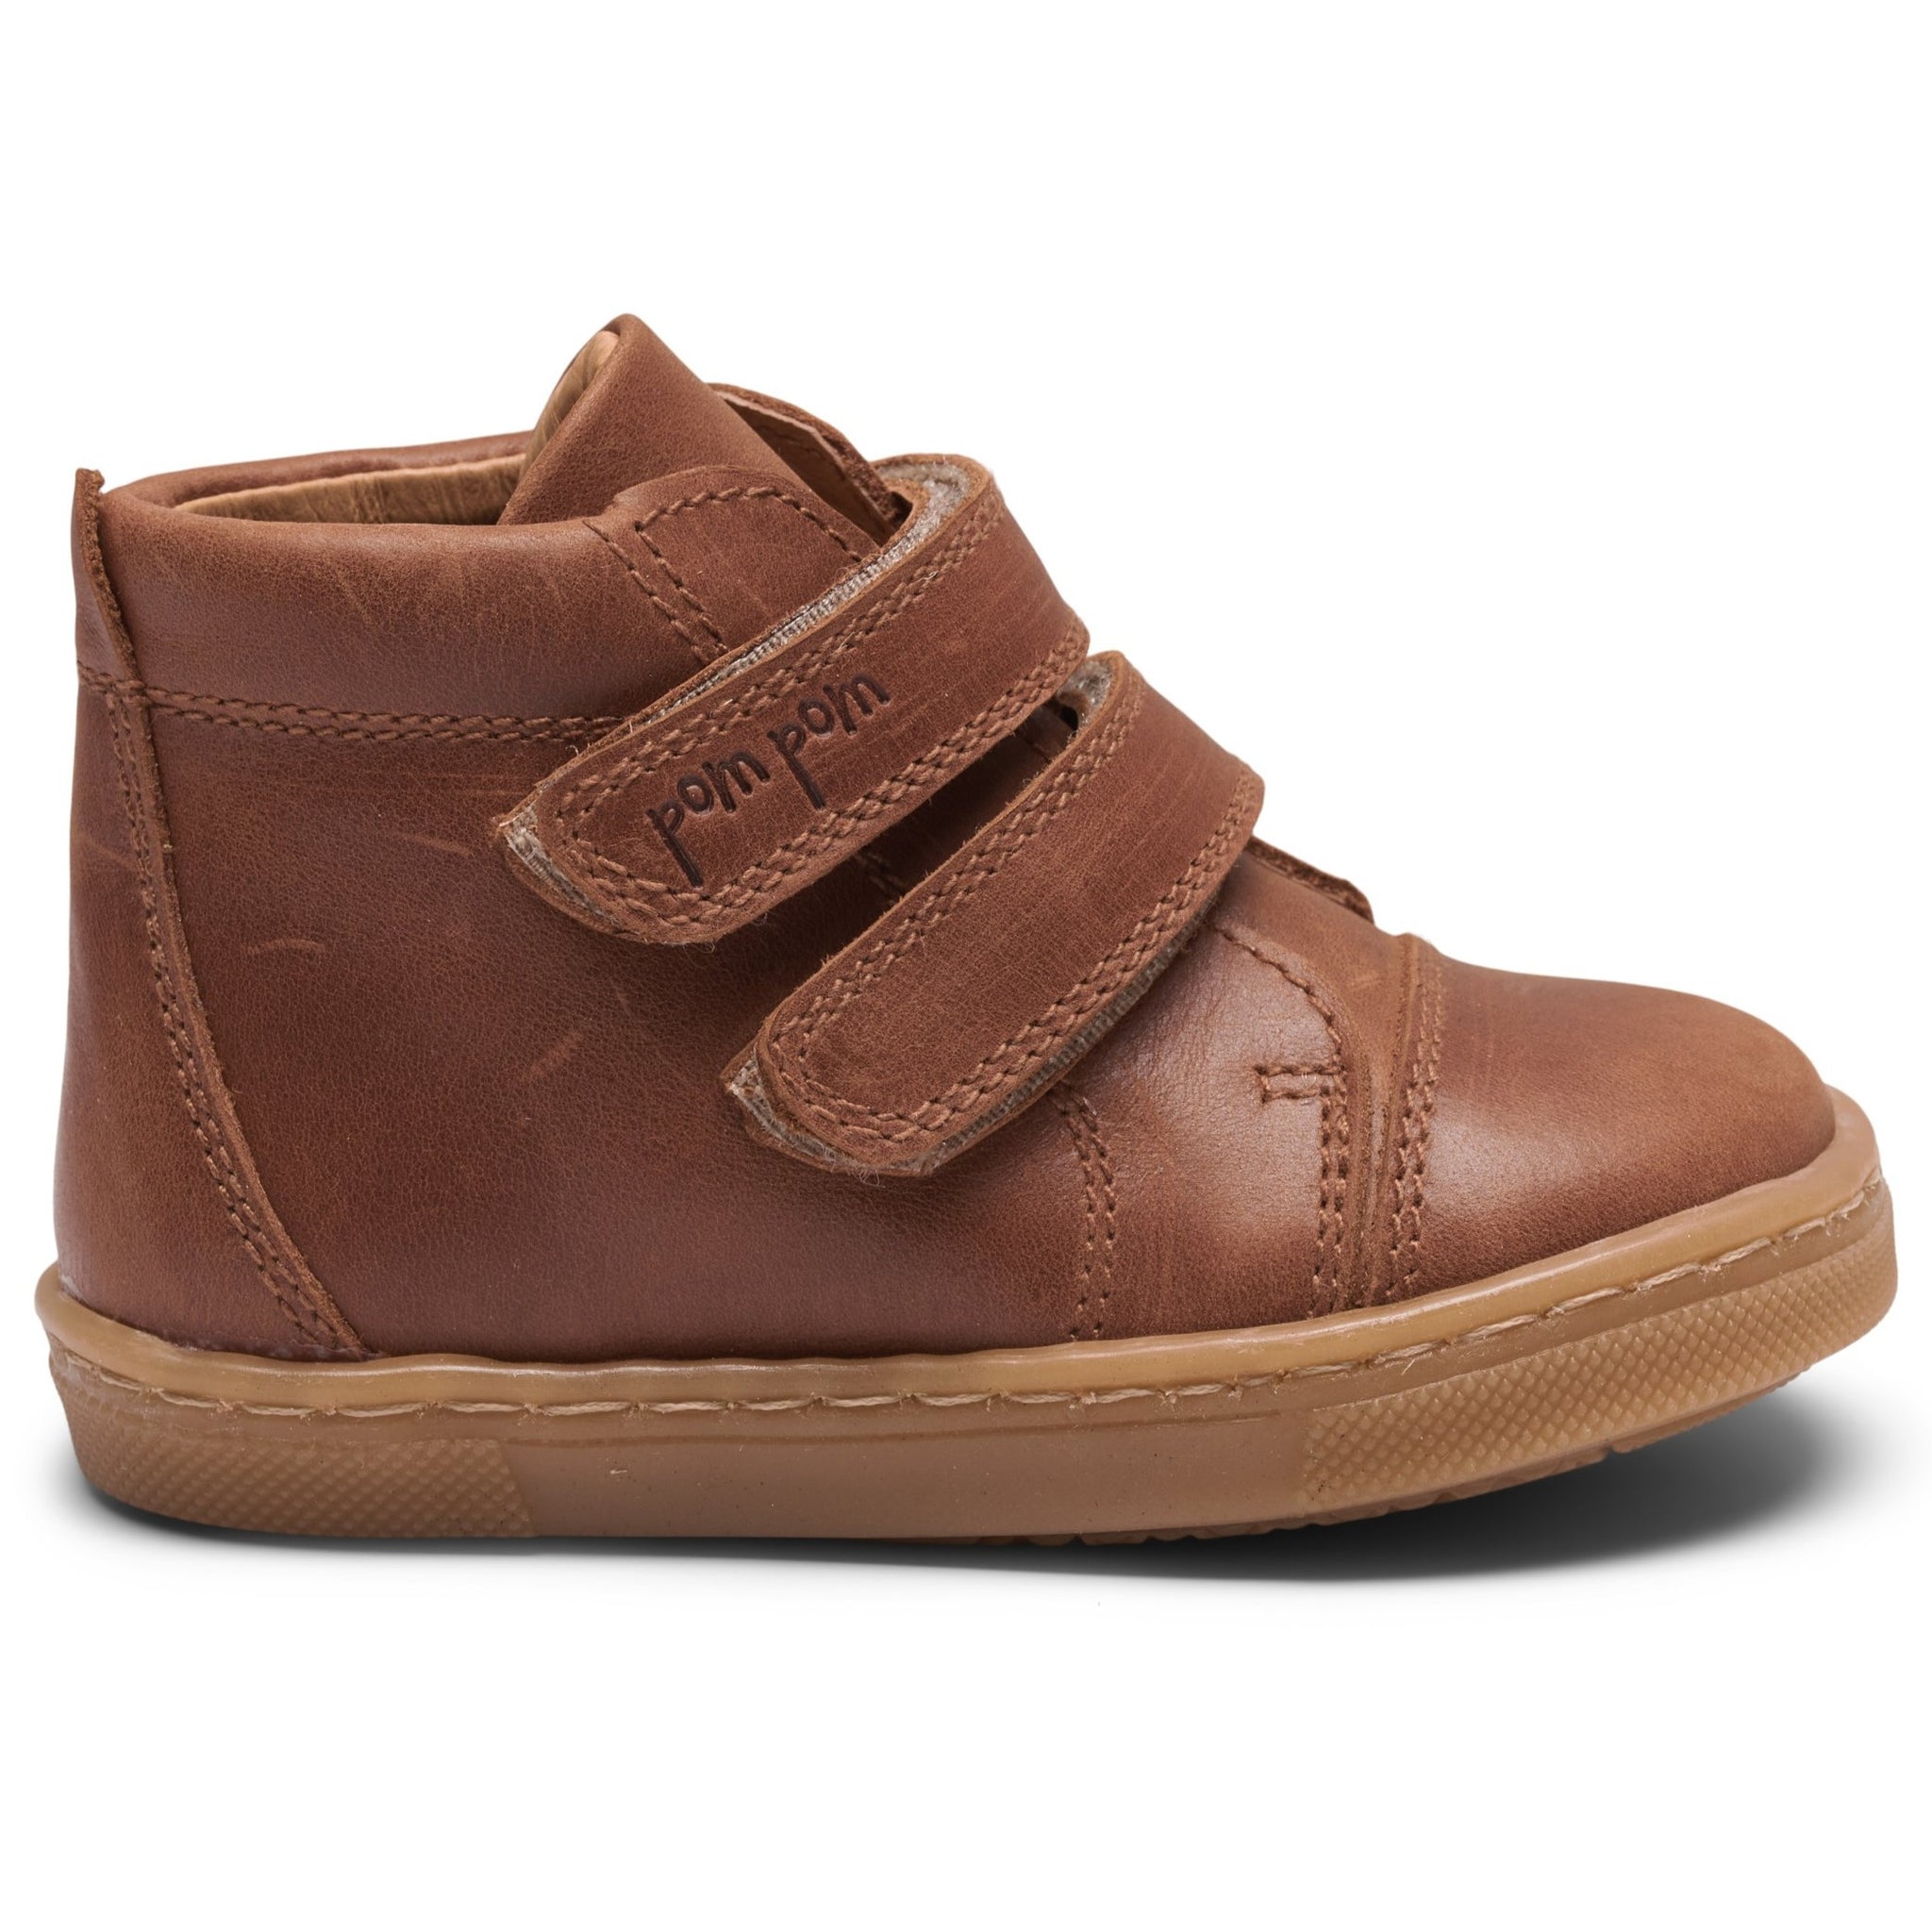 Pom Pom - Sneaker Velcro Shoe, 4833 - Dark Camel